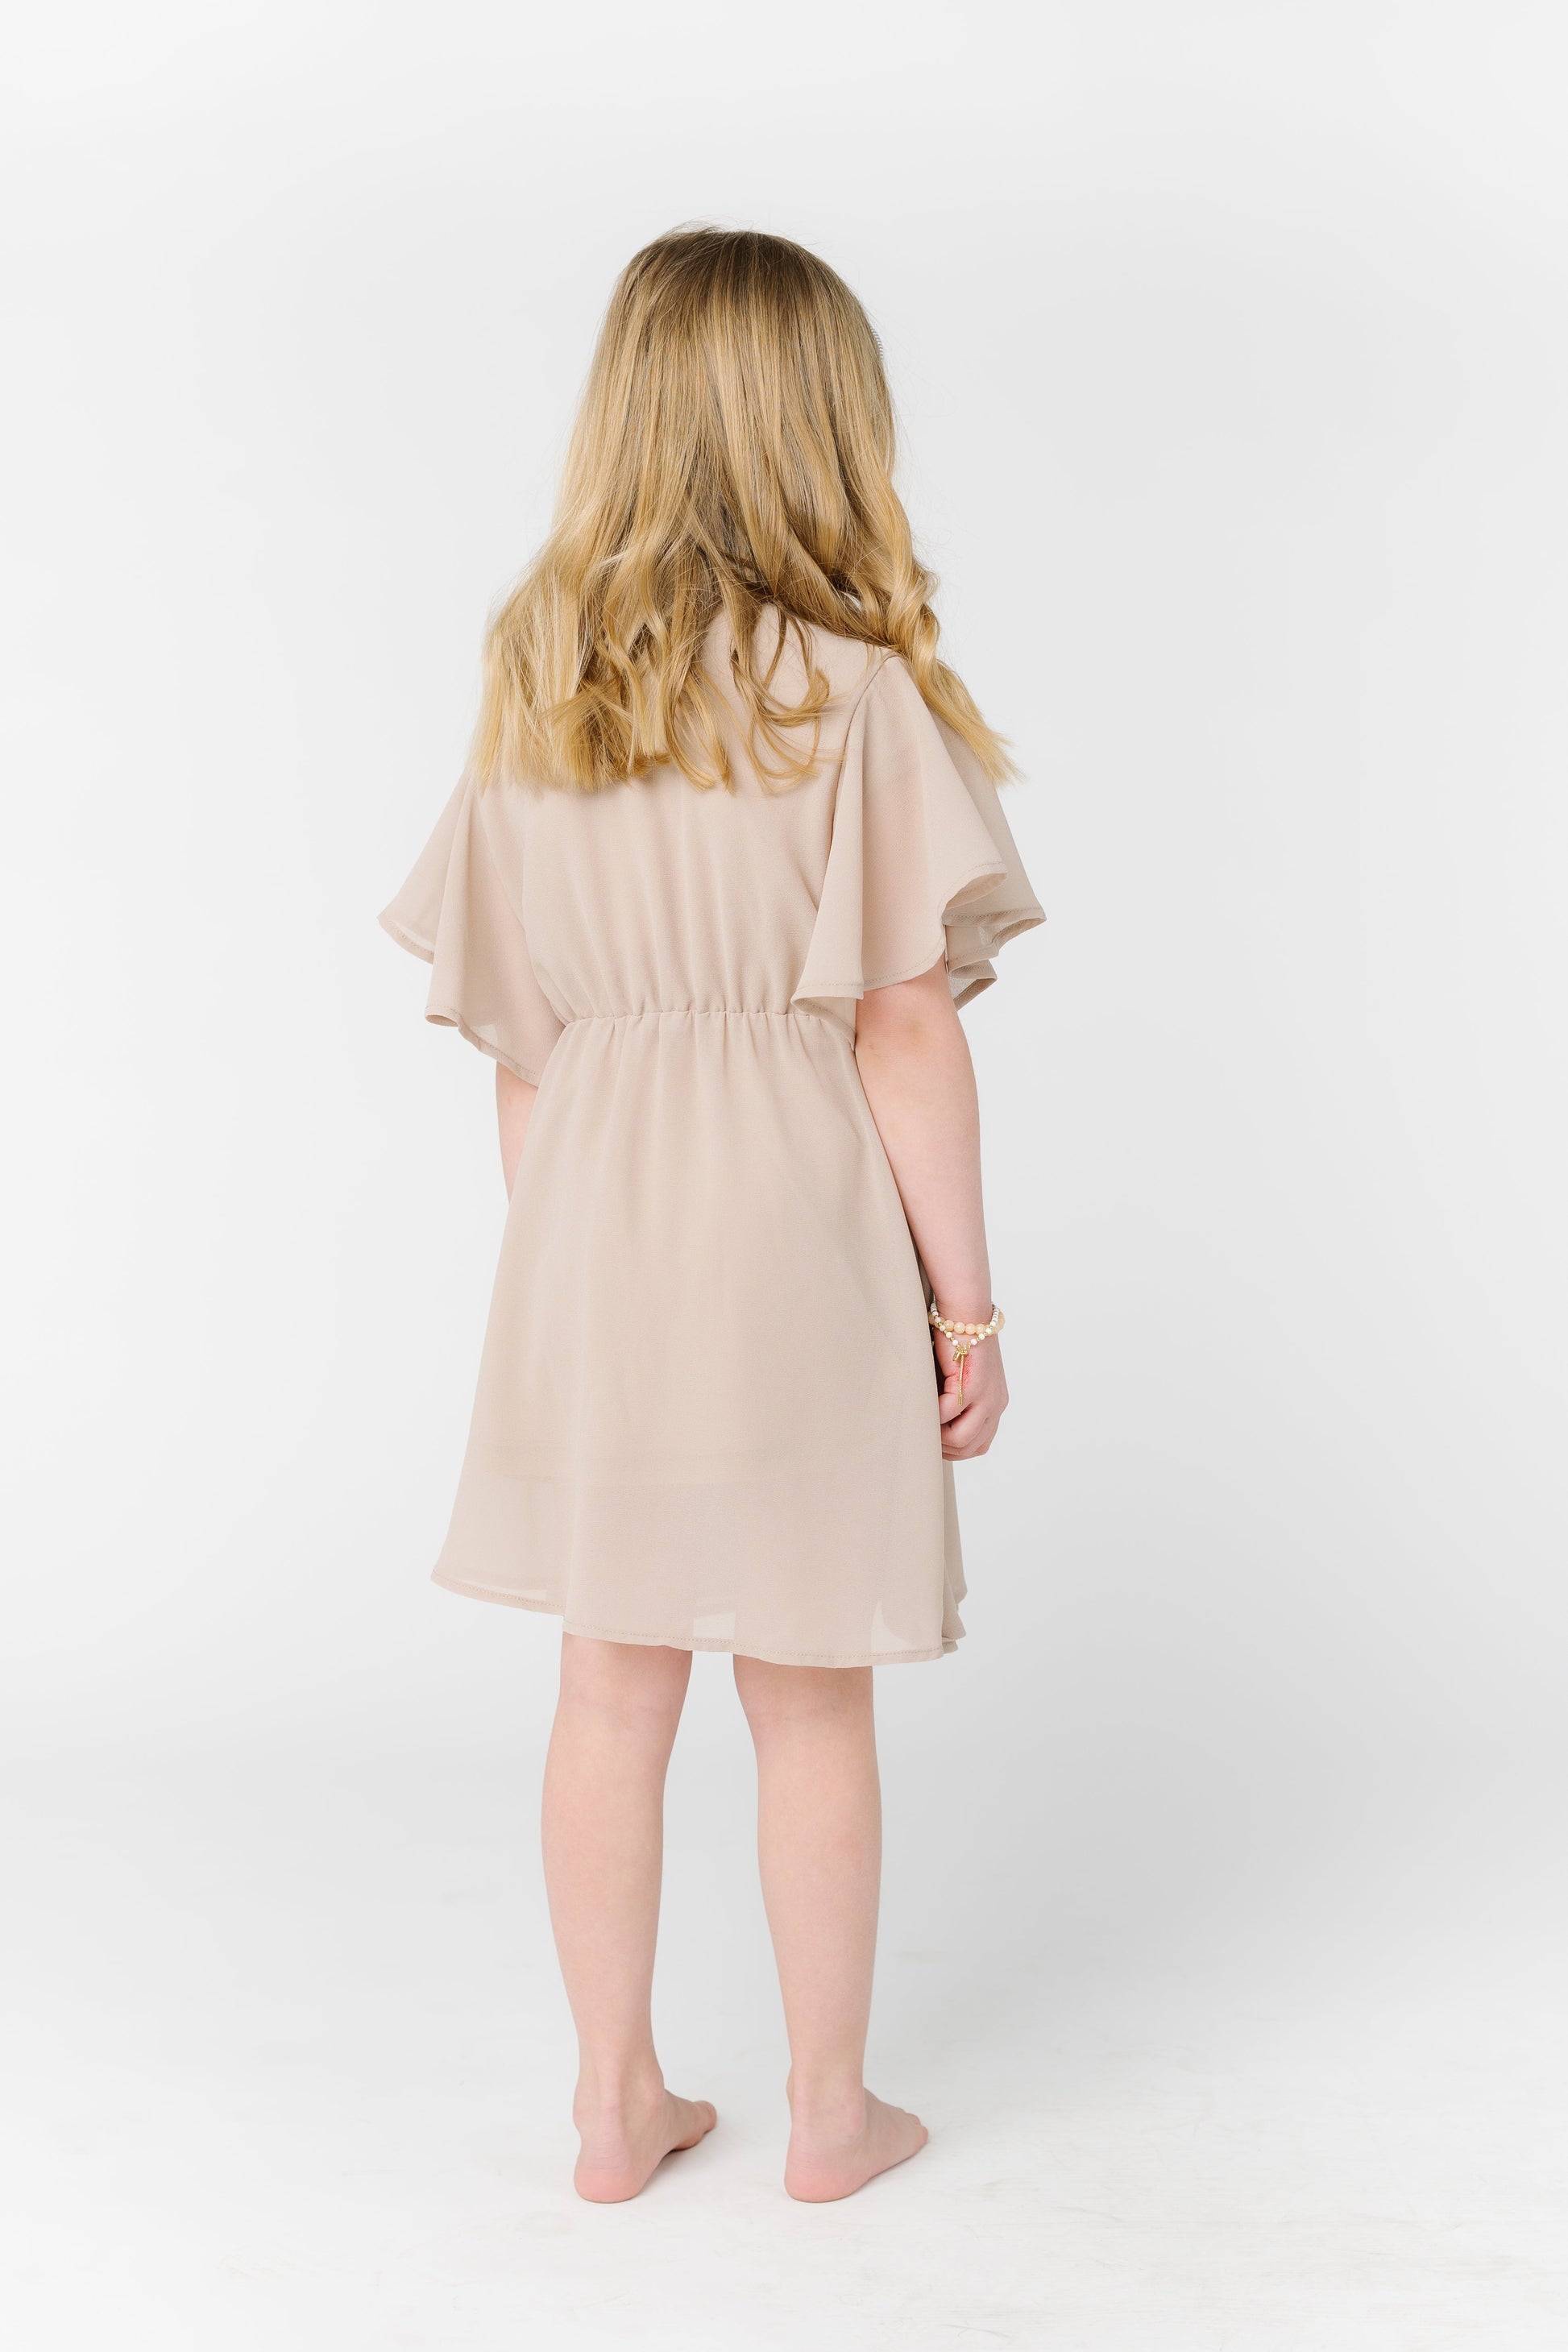 Little Naples Flutter Sleeve Girl's Dress - Taupe GIRL'S DRESS Arbor 